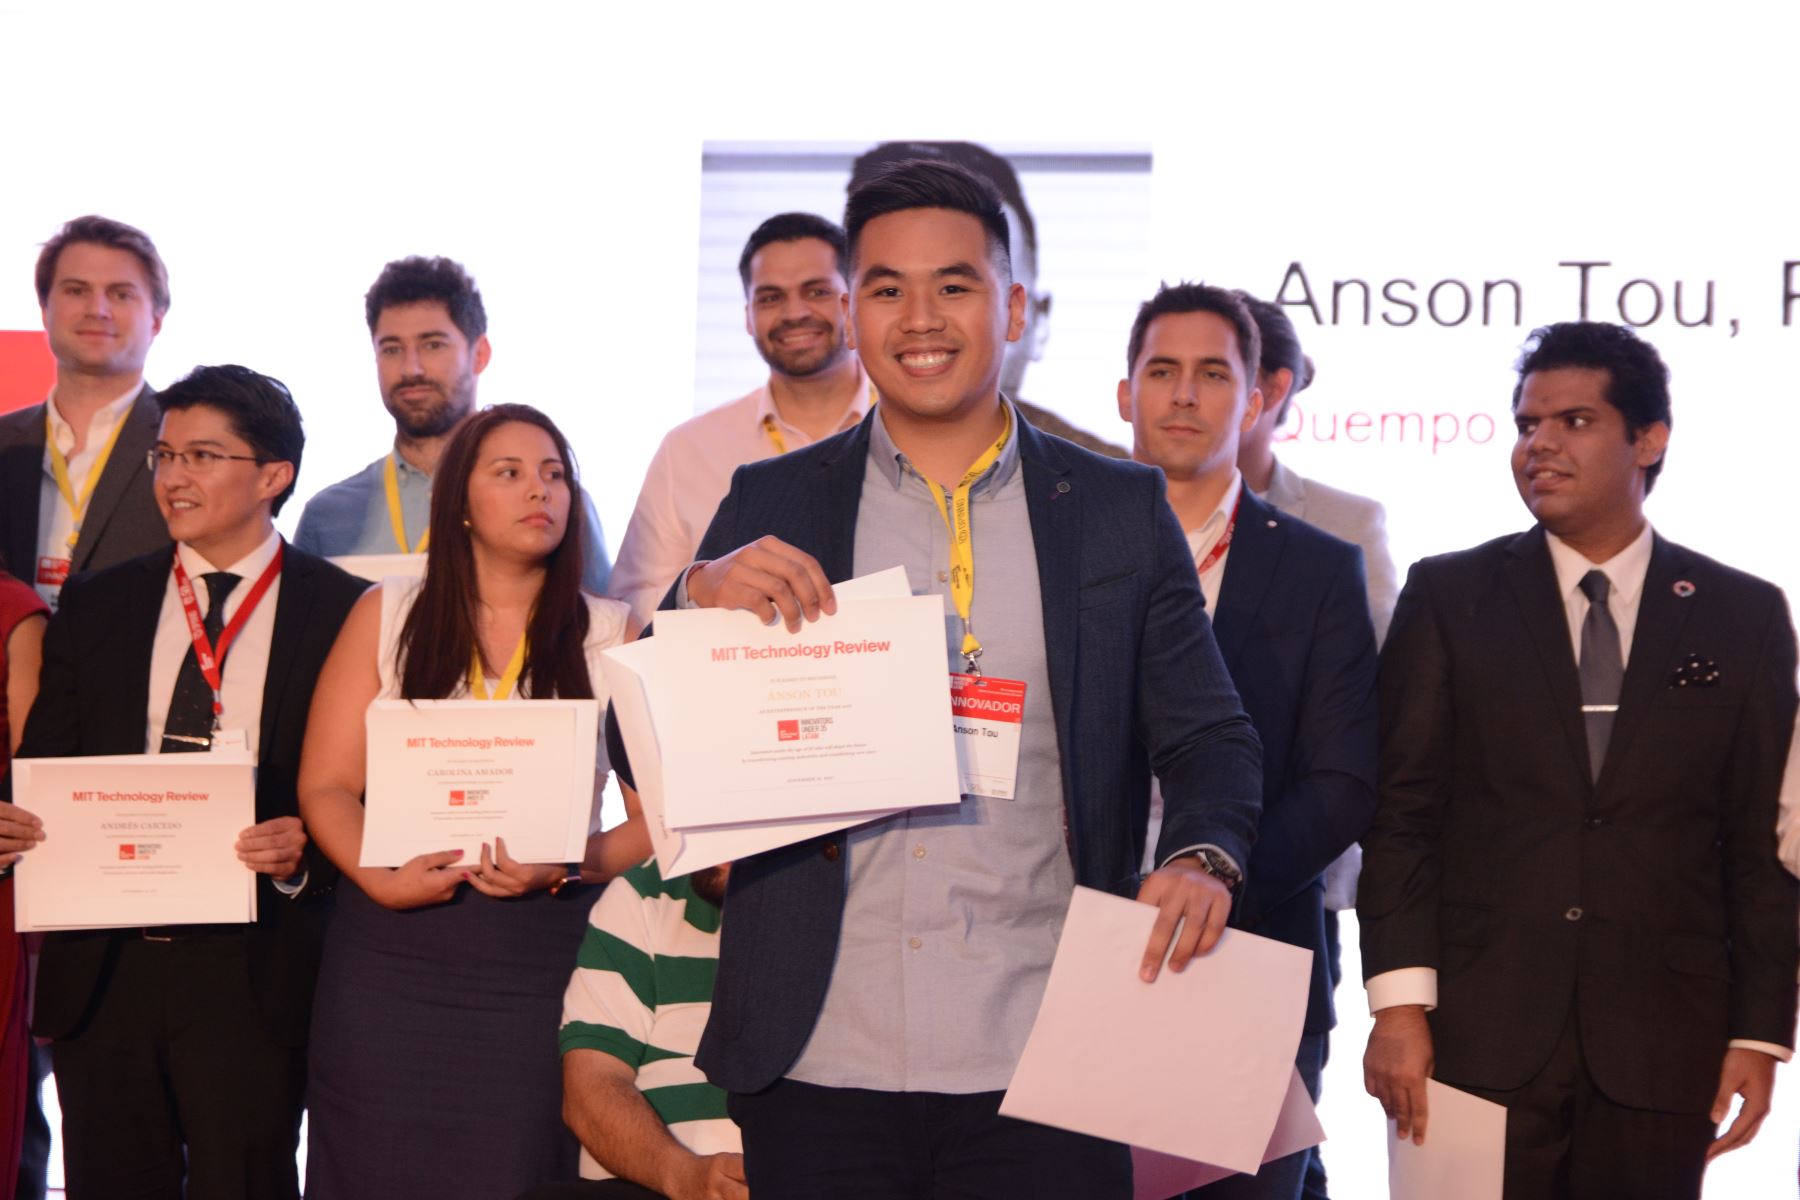 Anson Tou recibió el galardón en México. Foto: Difusión